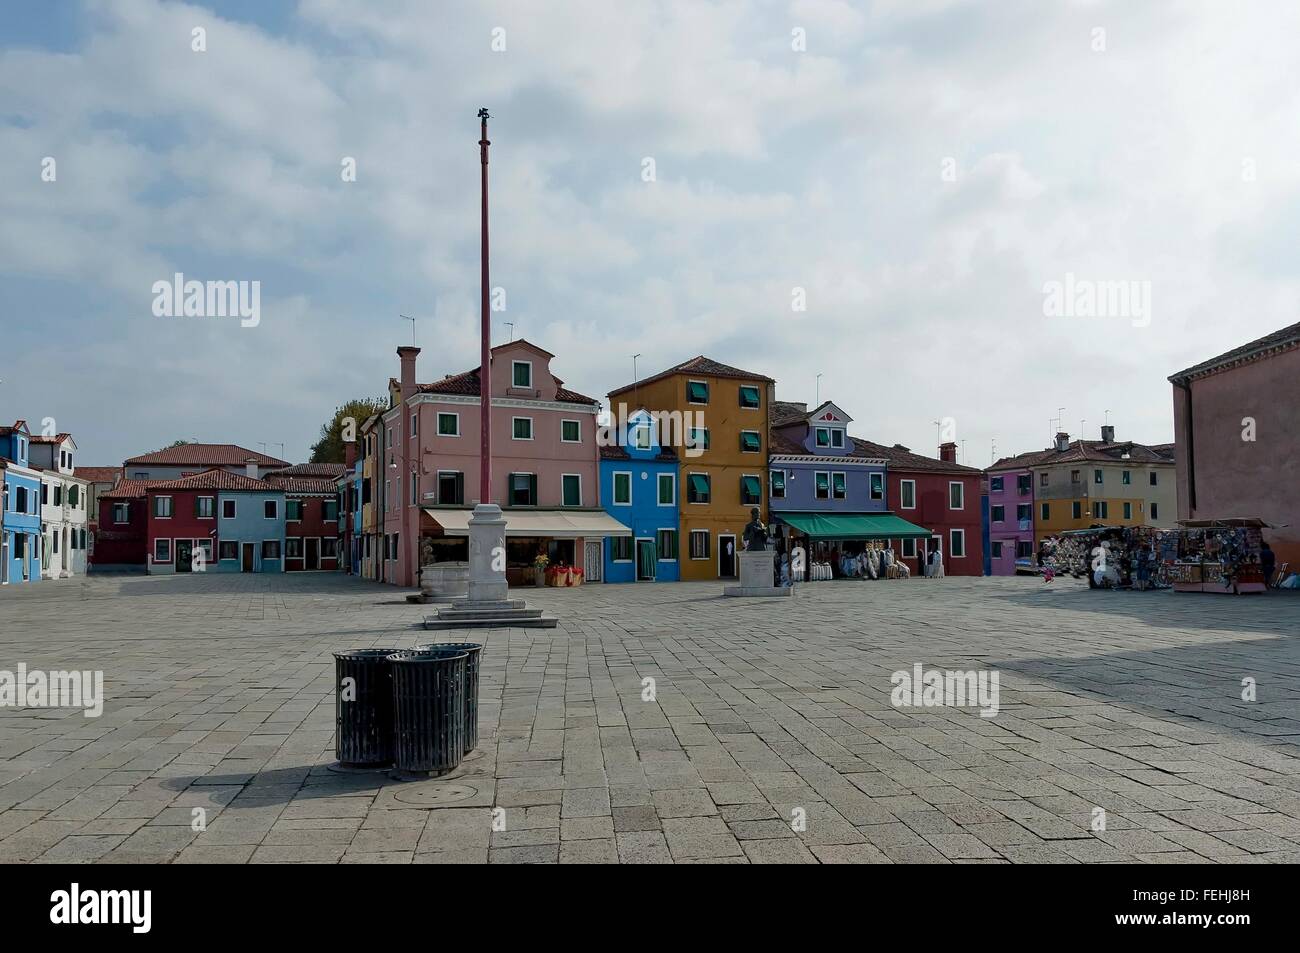 Square Baldassare Galuppi, byname Il Buranello on the famous island Burano, Venice, Italy Stock Photo